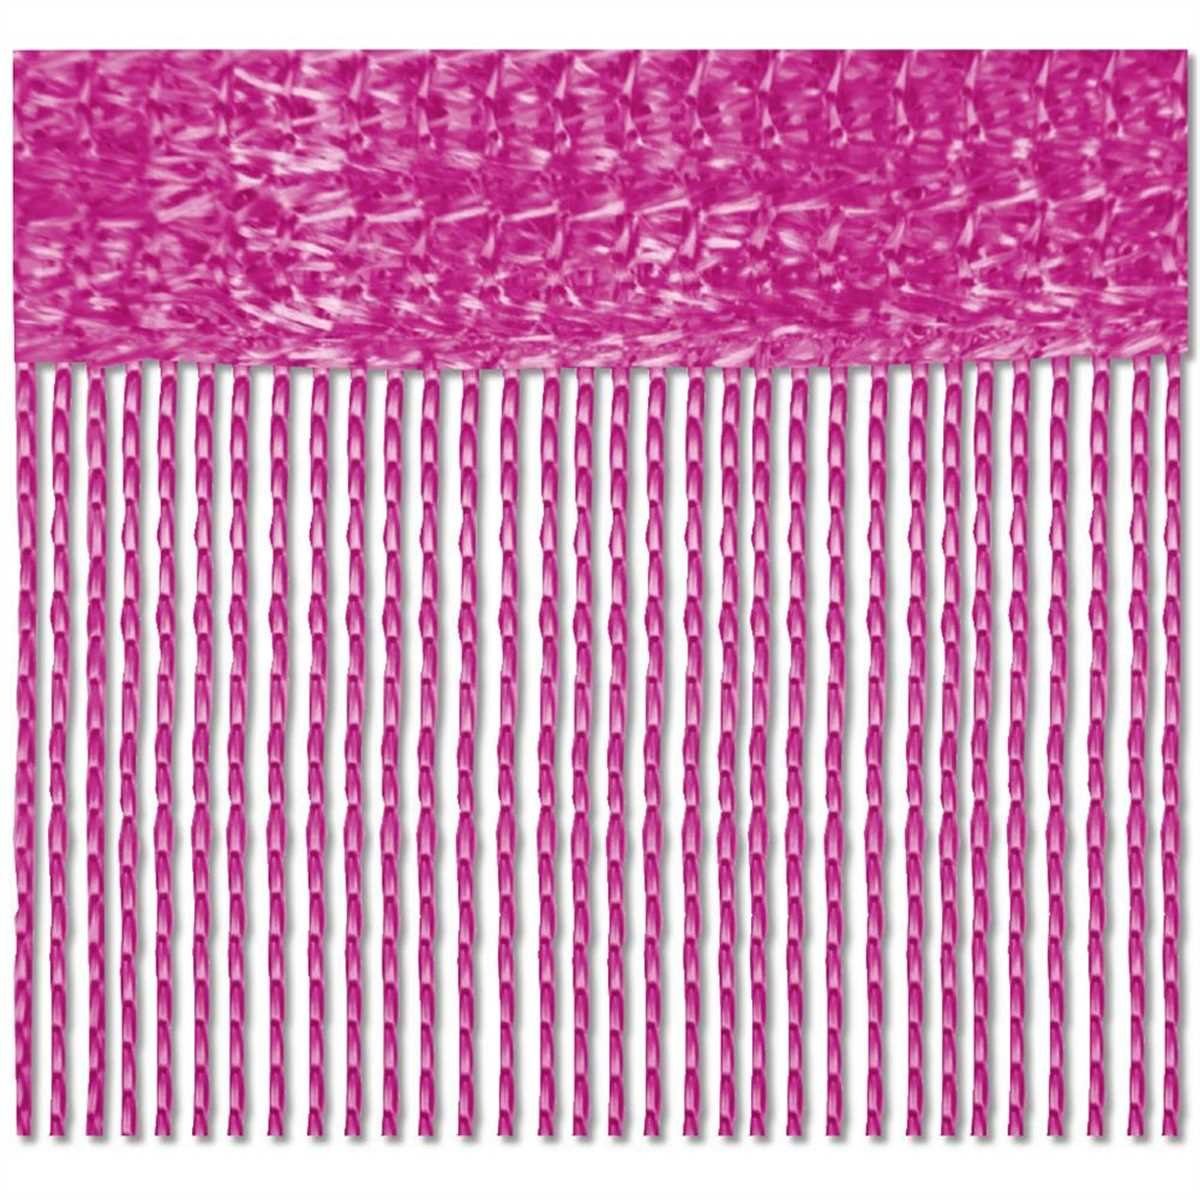 Fadenvorhang, Bestlivings, Stangendurchzug (2 St), halbtransparent, Fadengardinen mit Stangendurchzug, Vorhang in vers. Farben und Größen Pink